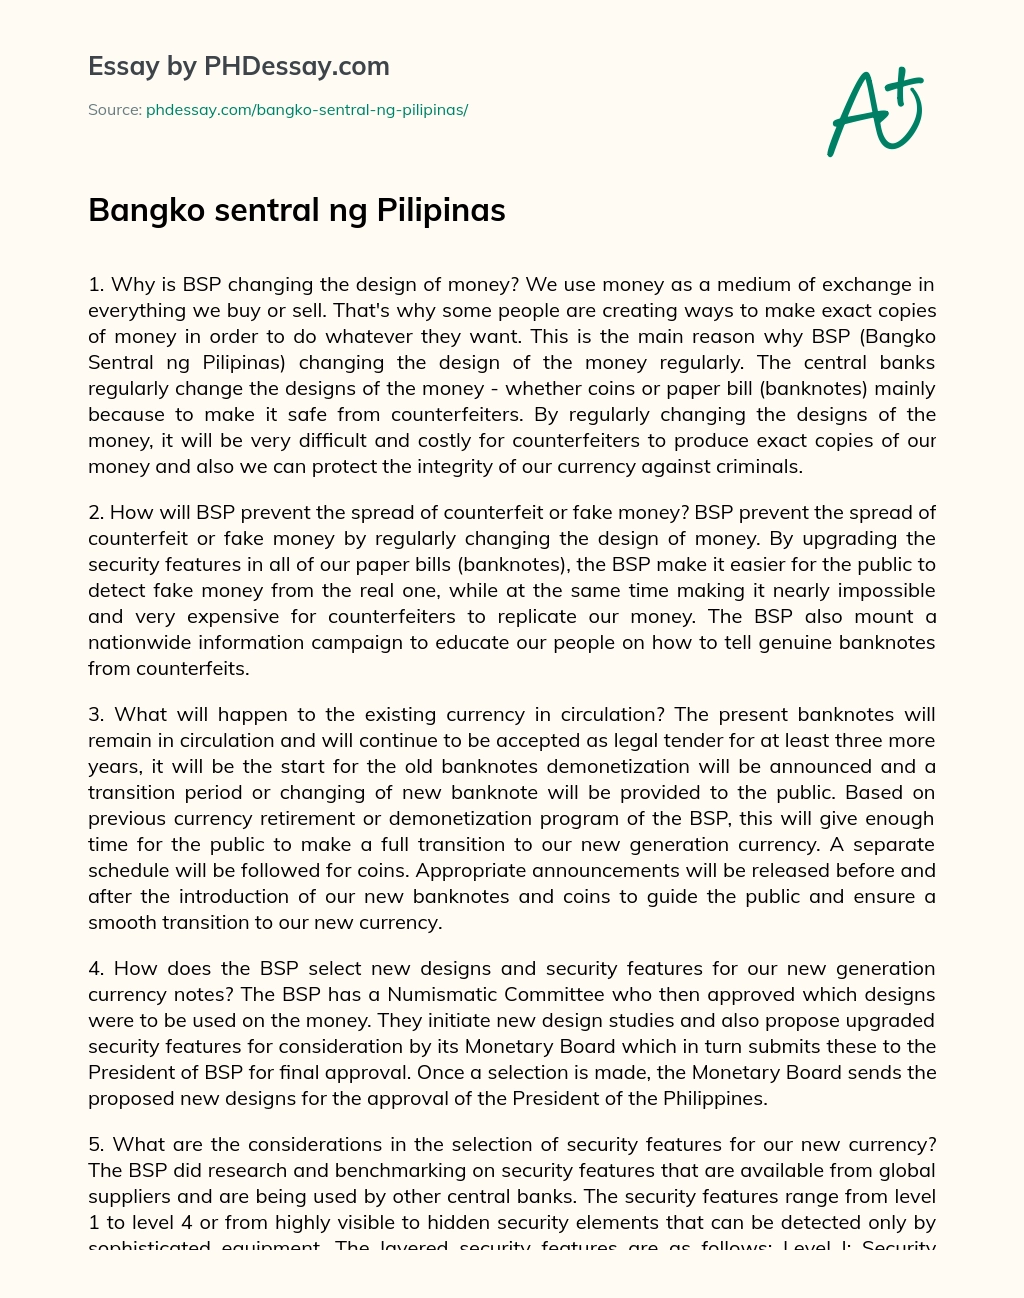 Bangko sentral ng Pilipinas essay